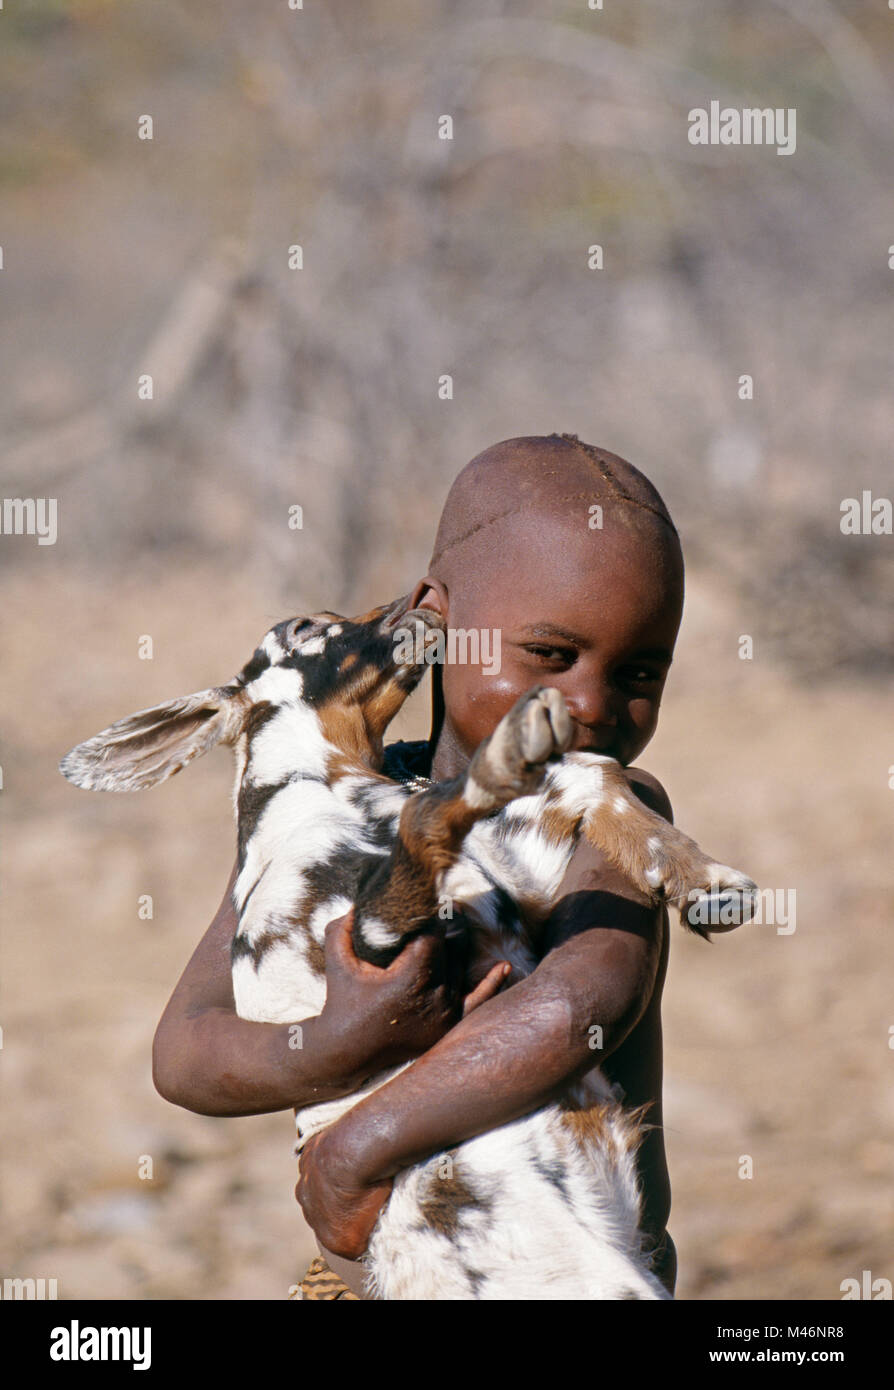 La Namibie. Kaokoveld, près d'Opuwo. La tribu Himba. Garçon. Goat tente de mordre l'oreille. Banque D'Images